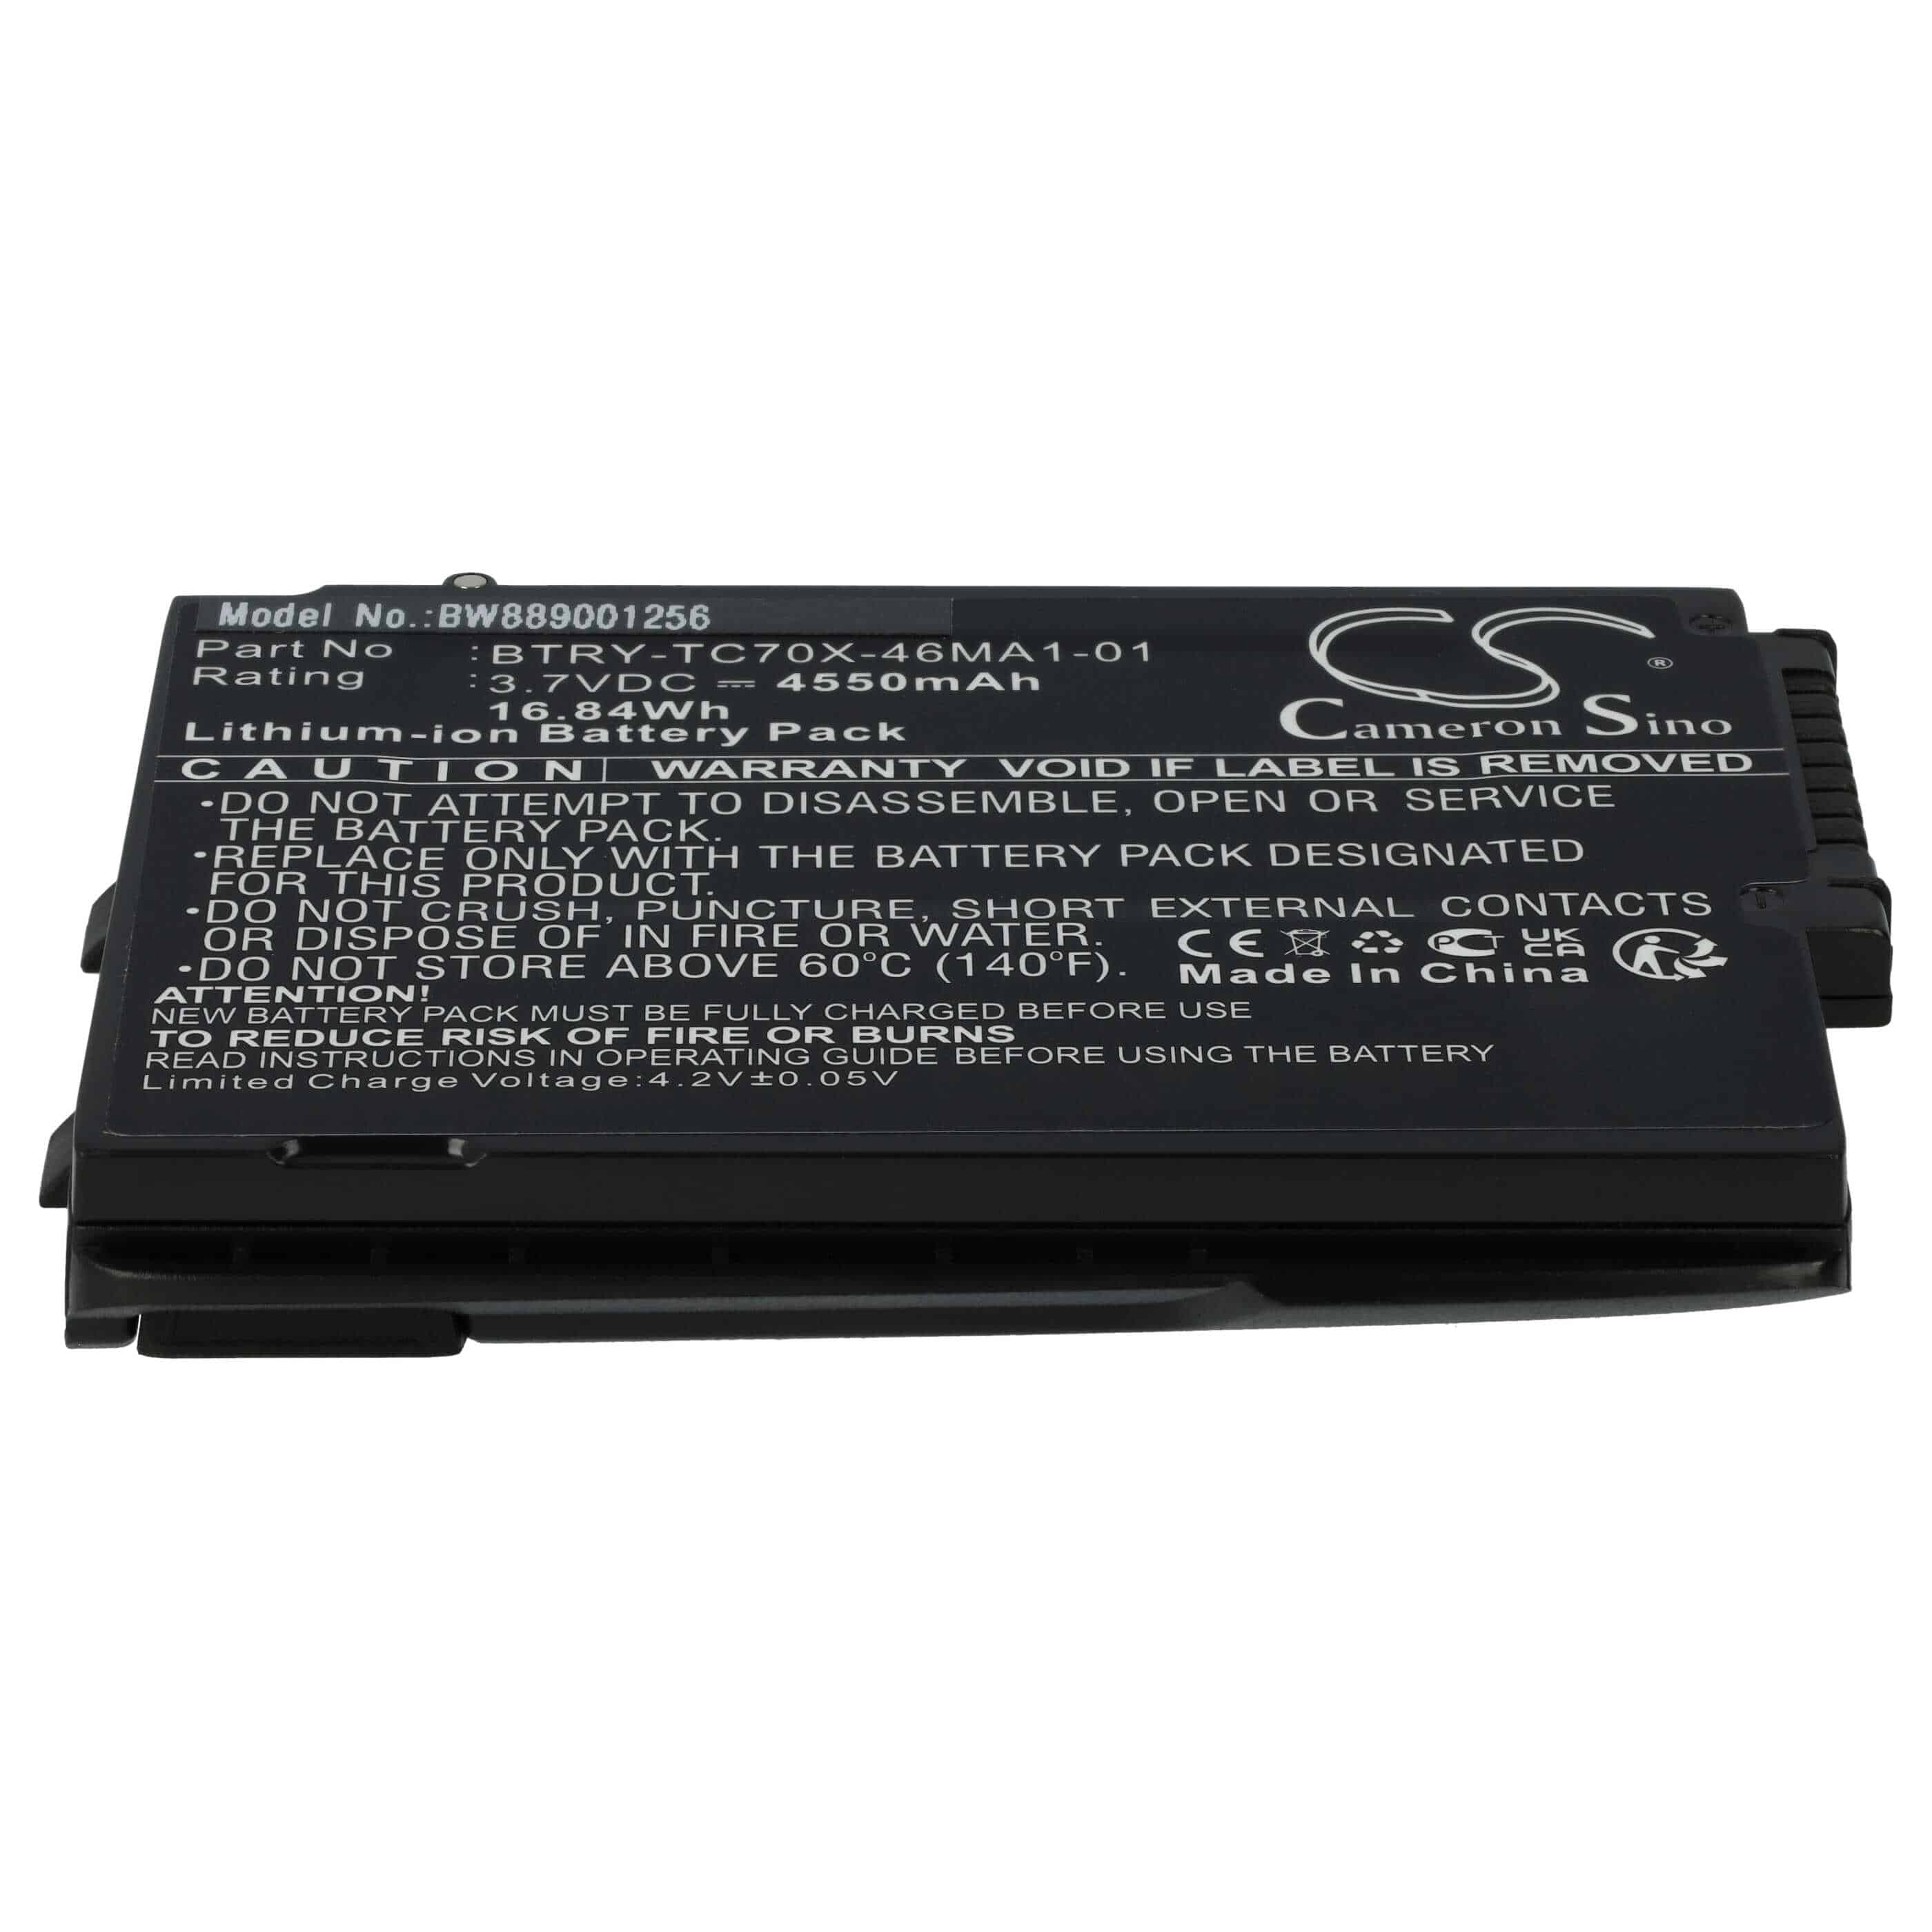 Batería reemplaza Motorola 82-171249-01, 82-171249-02 para escáner de código de barras - 4550 mAh 3,7 V Li-Ion